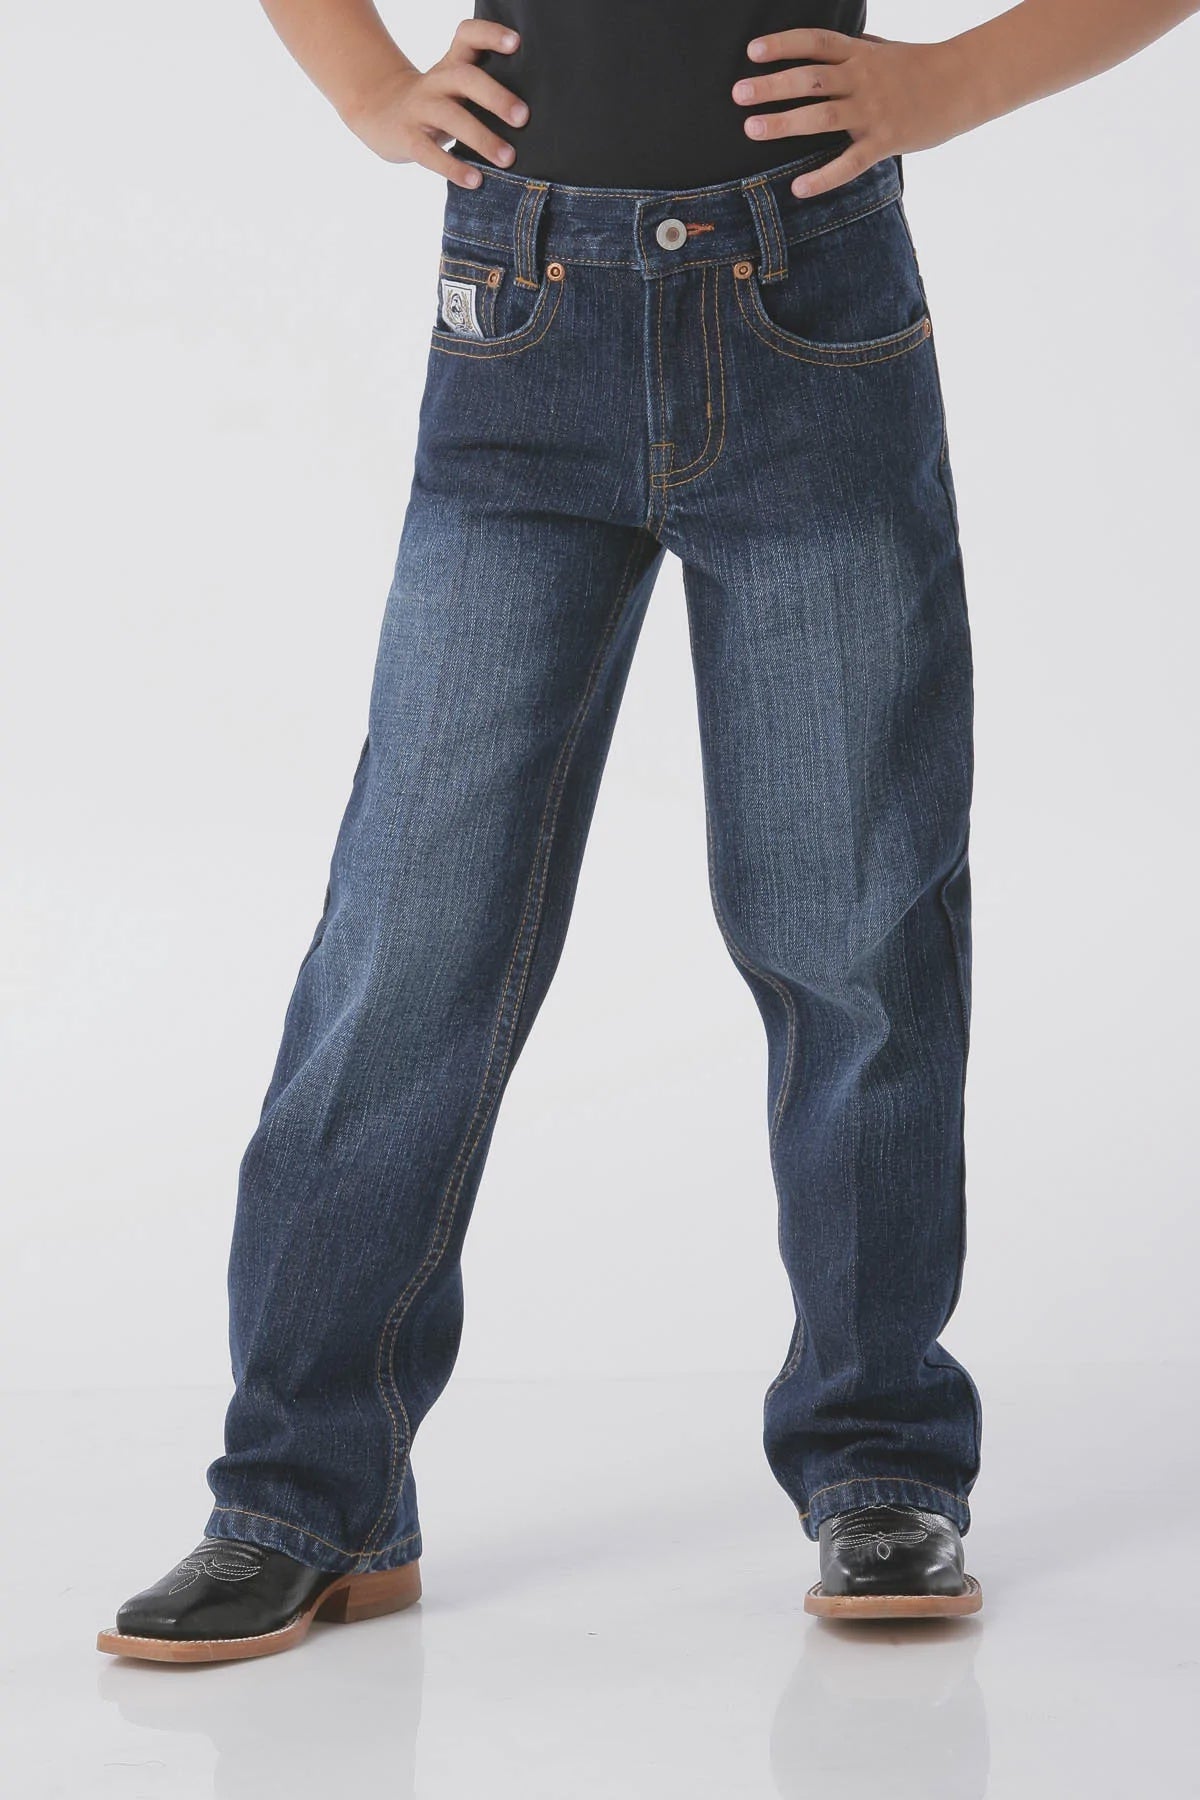 Boys Cinch White Label Dark Jean - Sizes 4-7 (6815077040205)